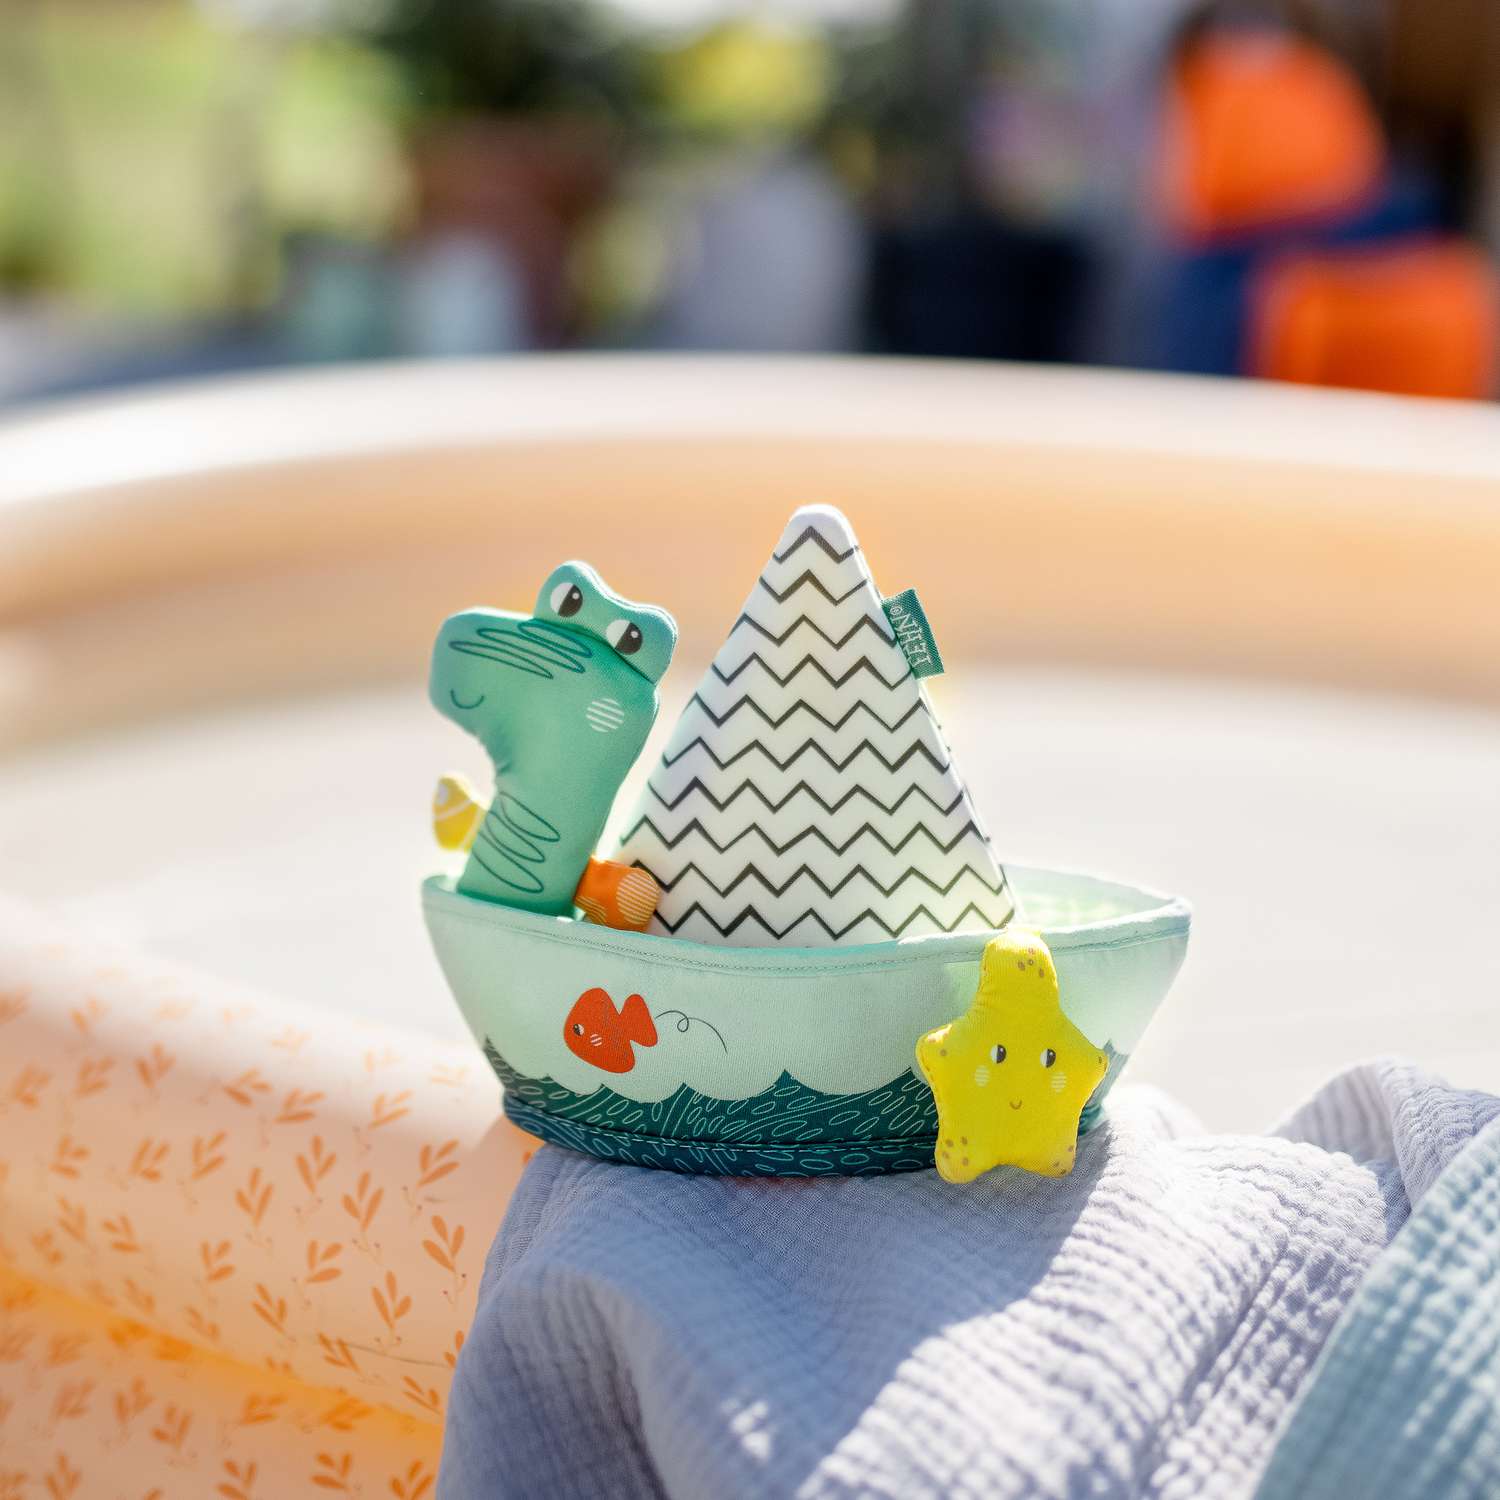 Игрушка для ванны FEHN Лодка и пальчиковая игрушка Крокодил - фото 2